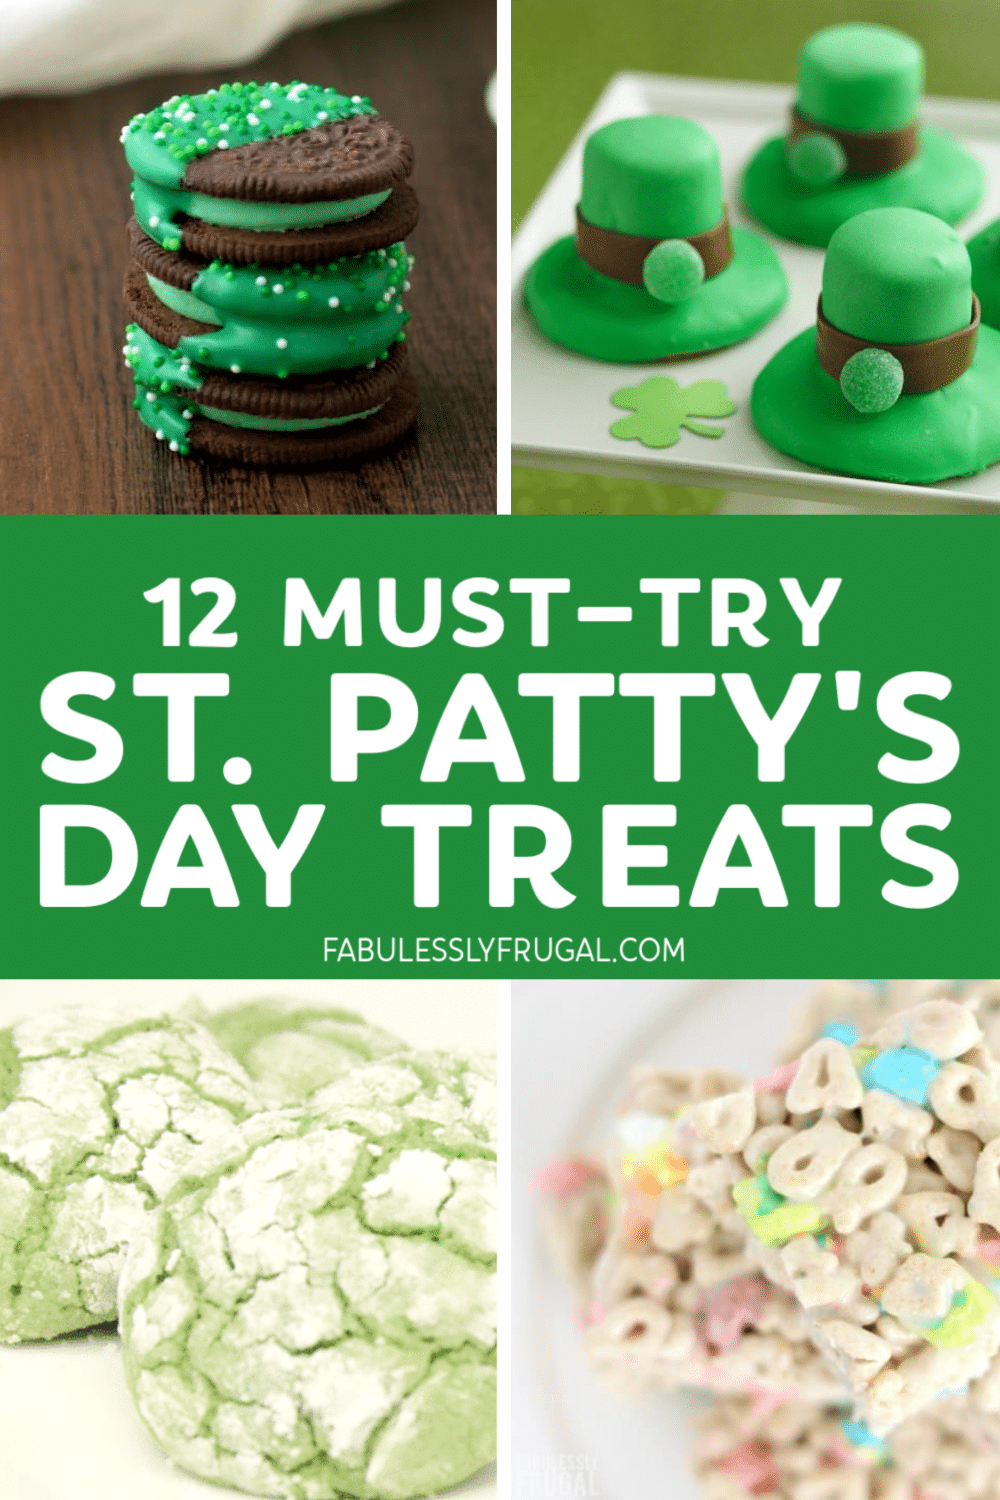 St. Patrick's Day treats